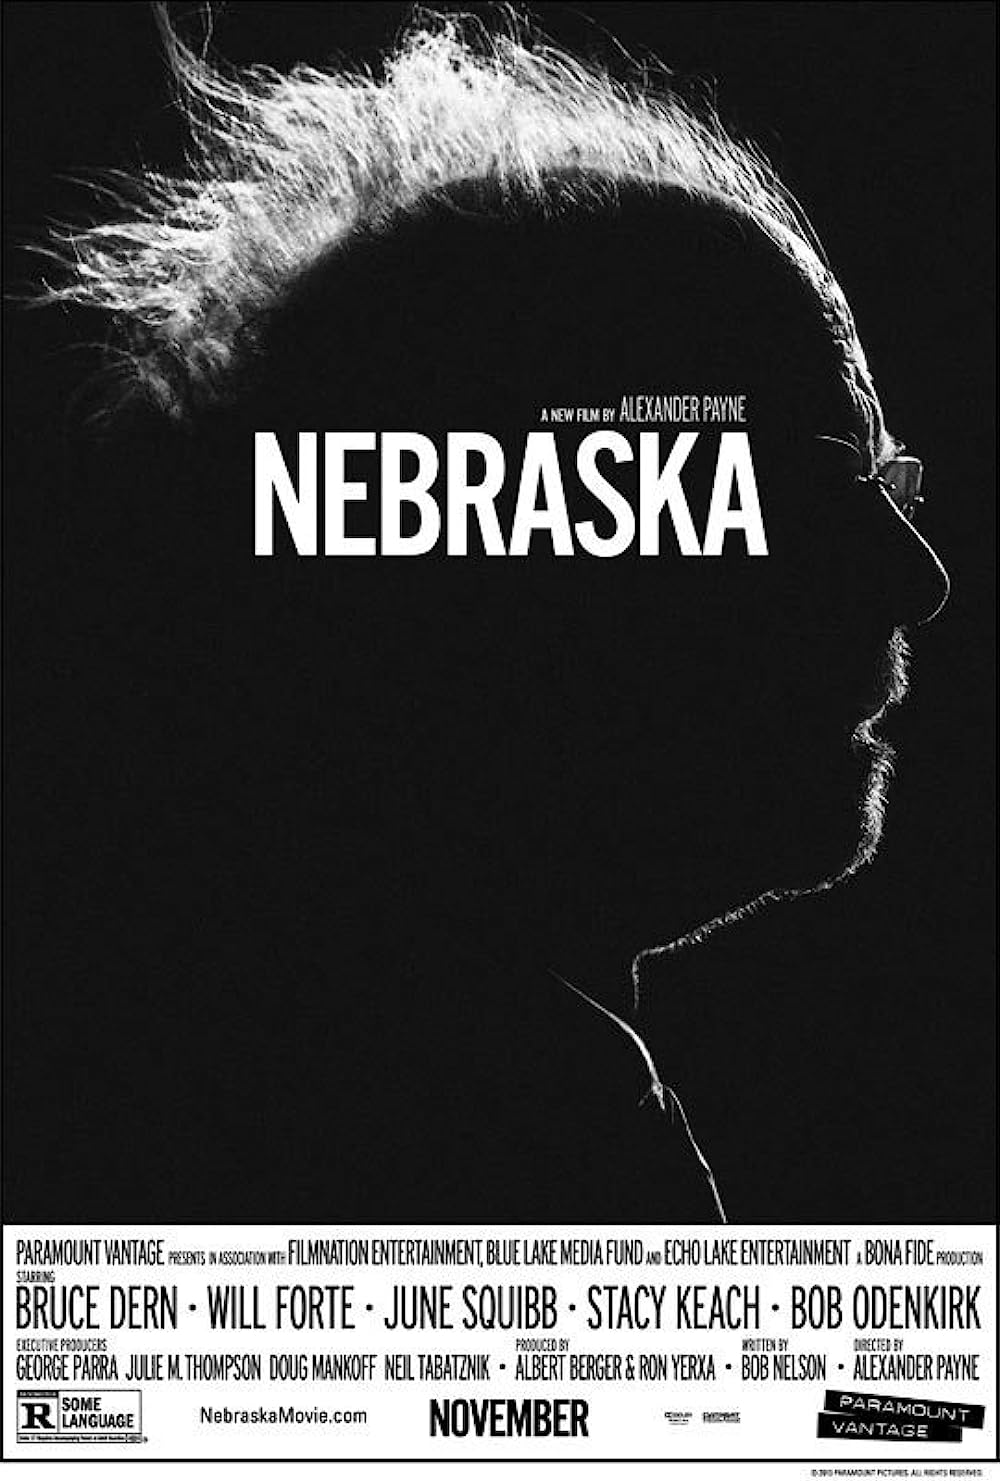 การเดินทางเพื่อสำรวจพลวัตของครอบครัว: บทวิจารณ์ภาพยนตร์ Nebraska (2013)